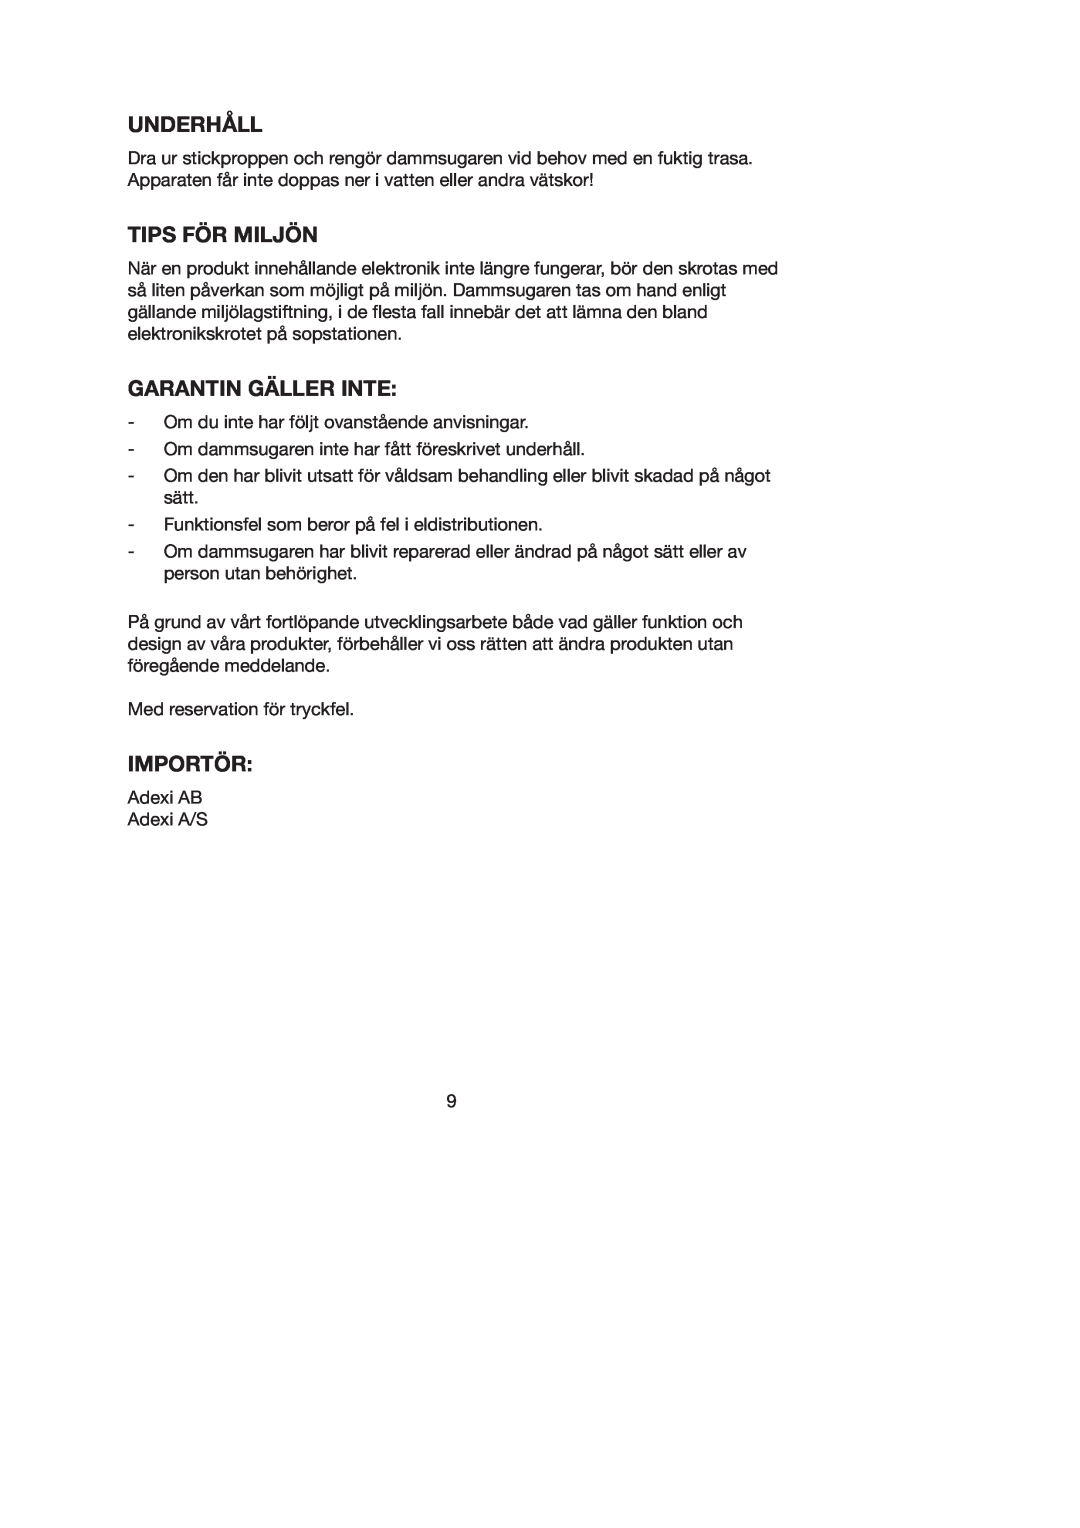 Melissa 740-095 manual Underhåll, Tips För Miljön, Garantin Gäller Inte, Importör 